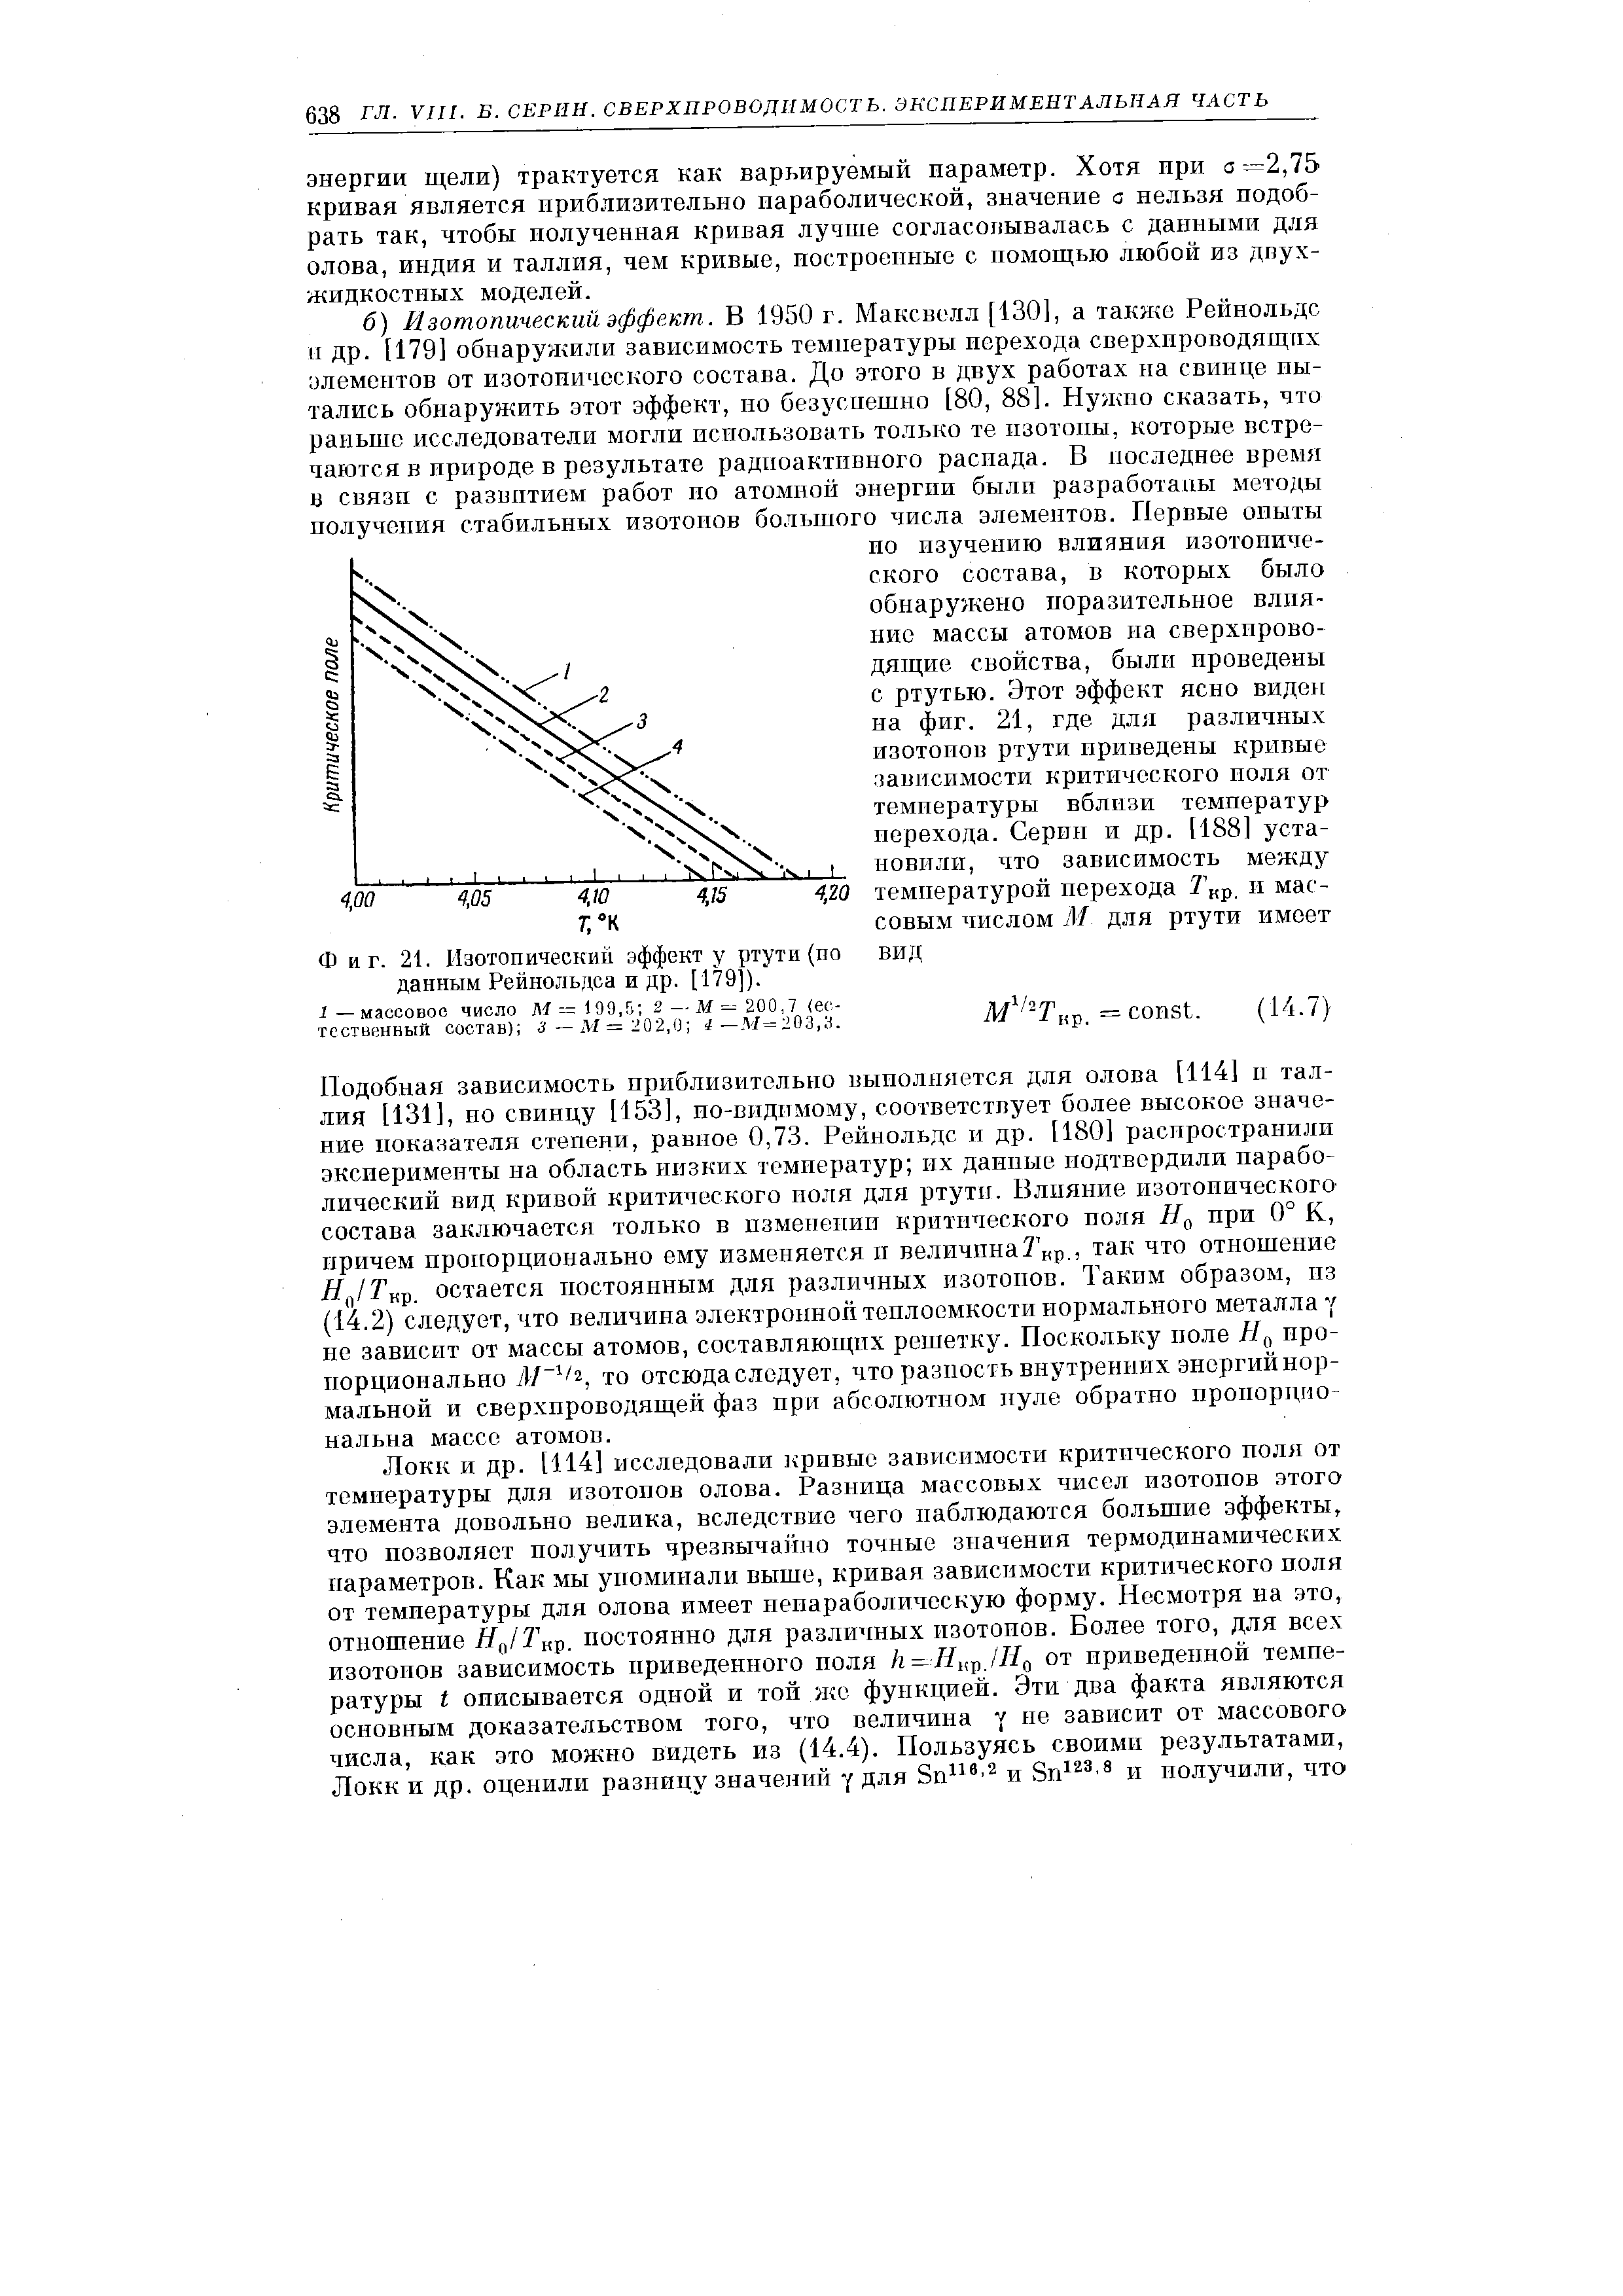 Фиг. 21. Изотопический эффекту ртути (по вид данным Рейнольдса и др. [179]). 
